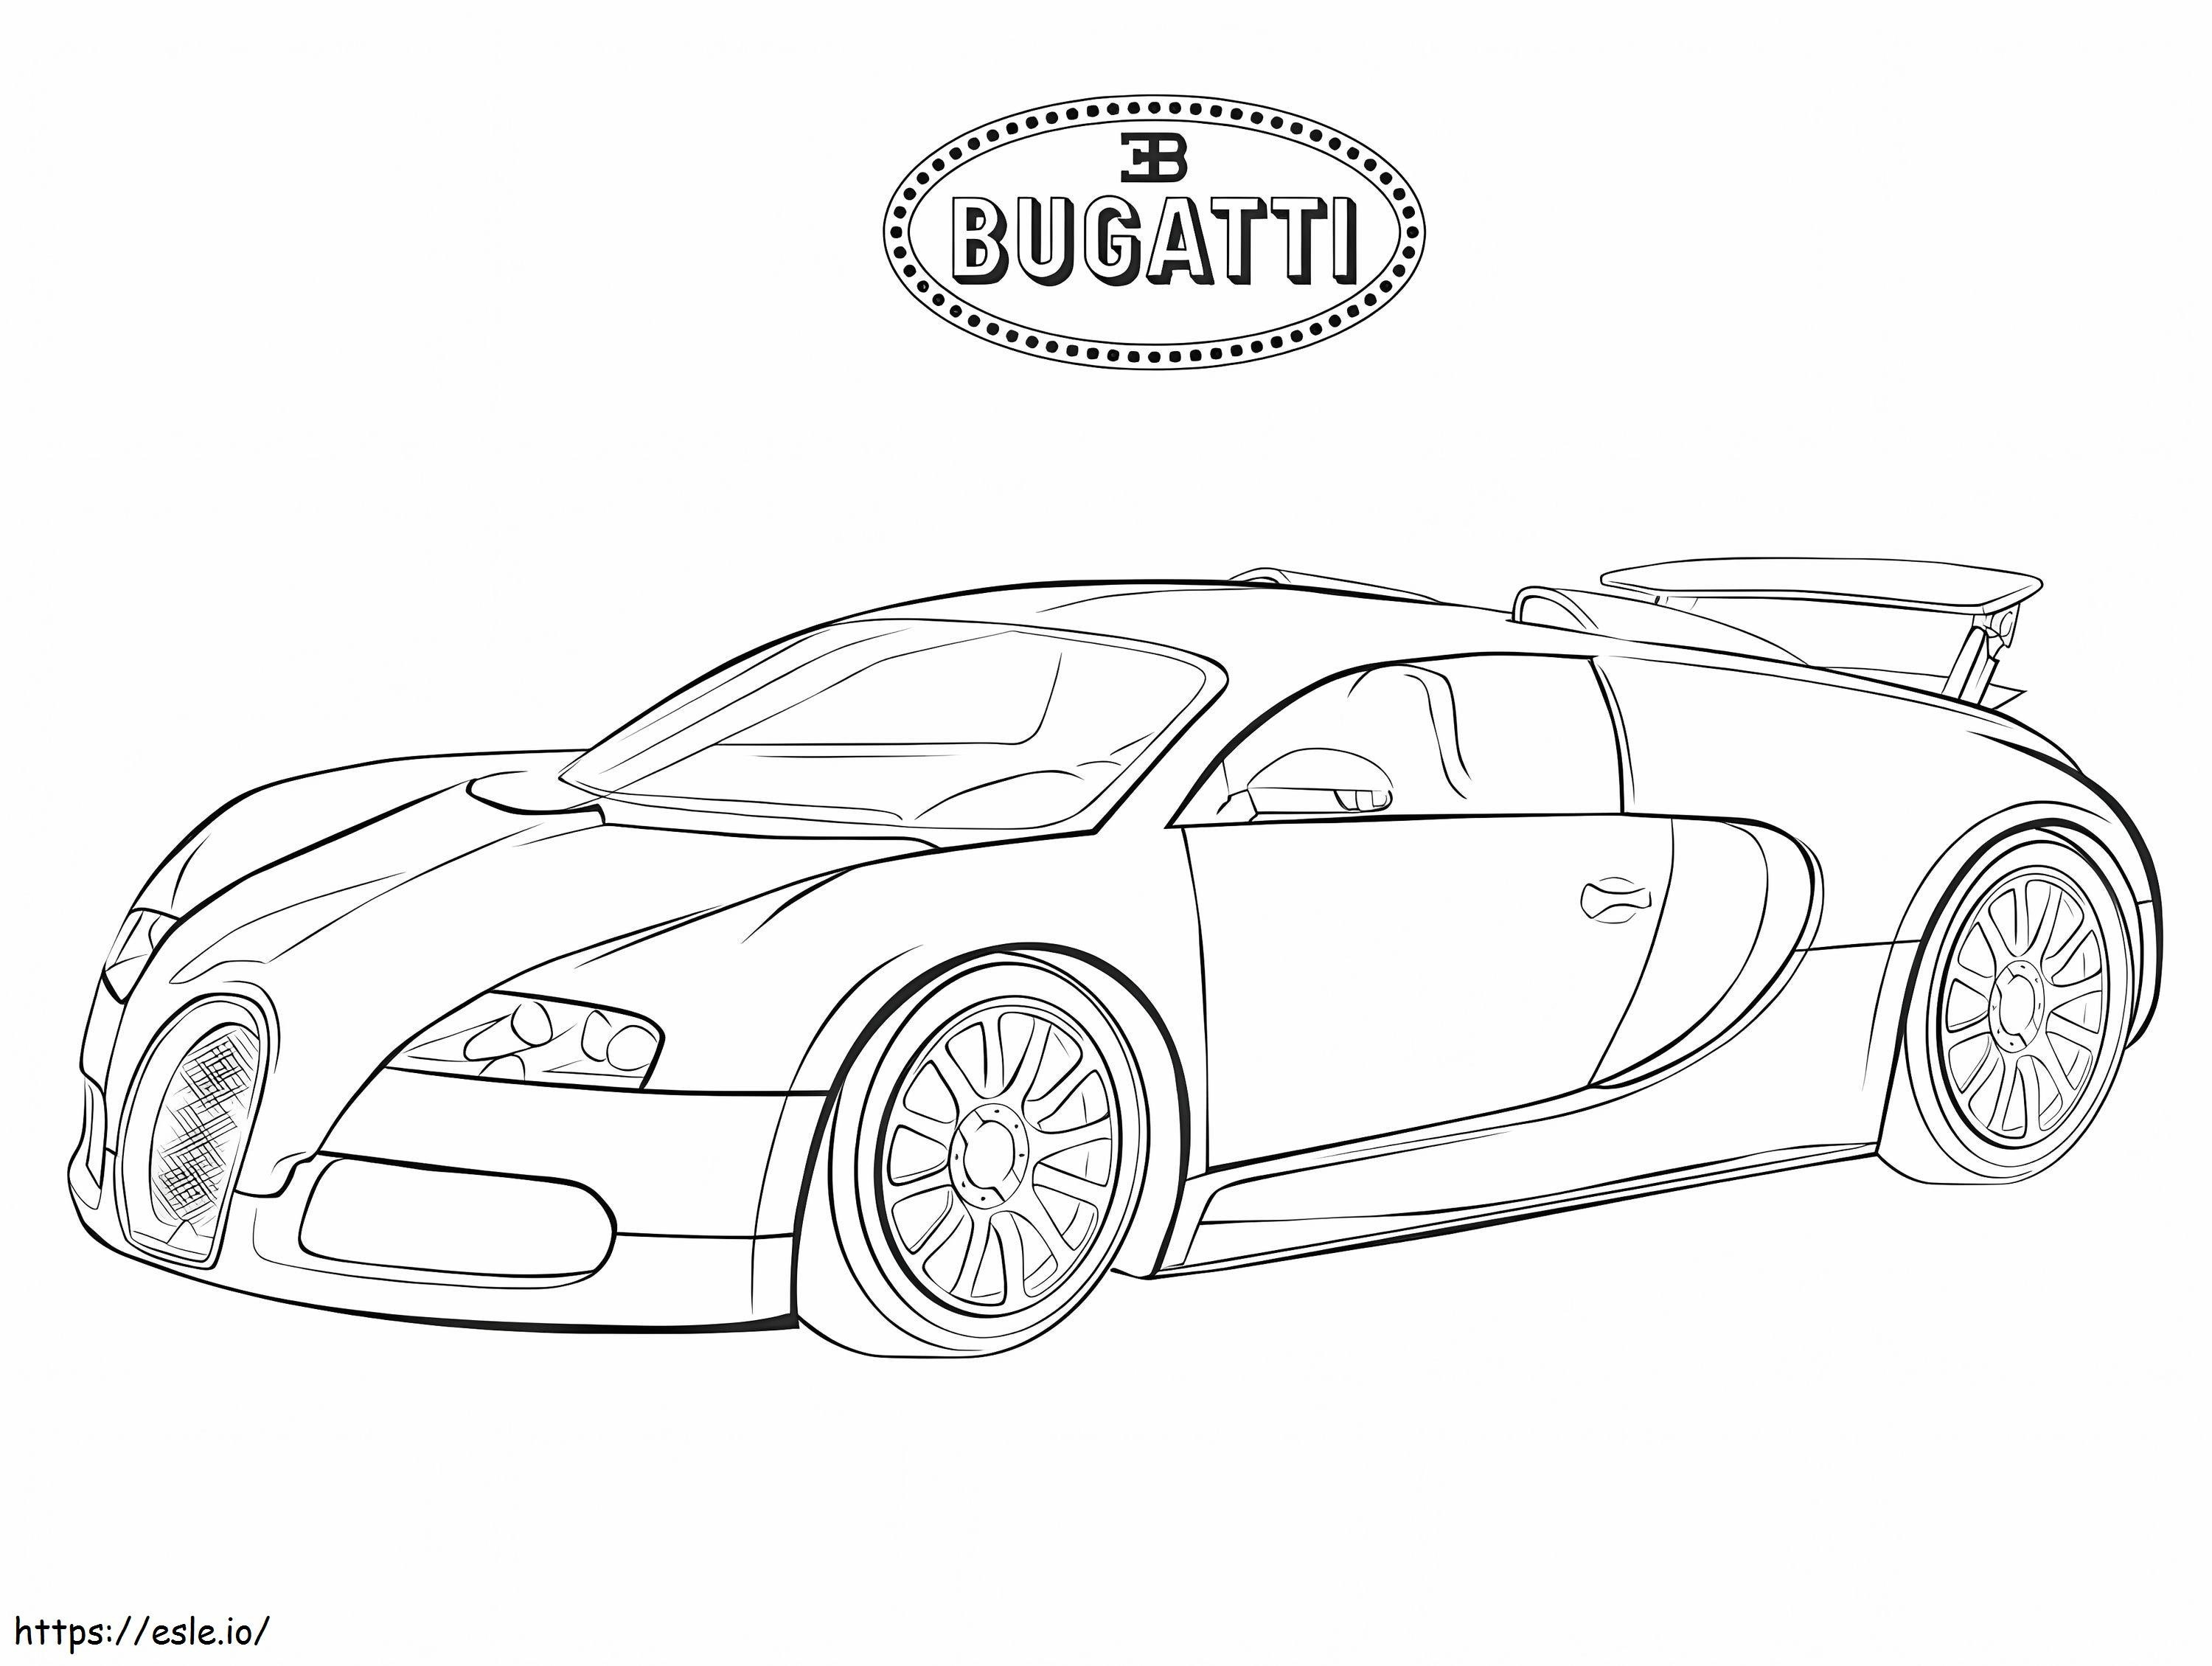 Bugatti 6 para colorear